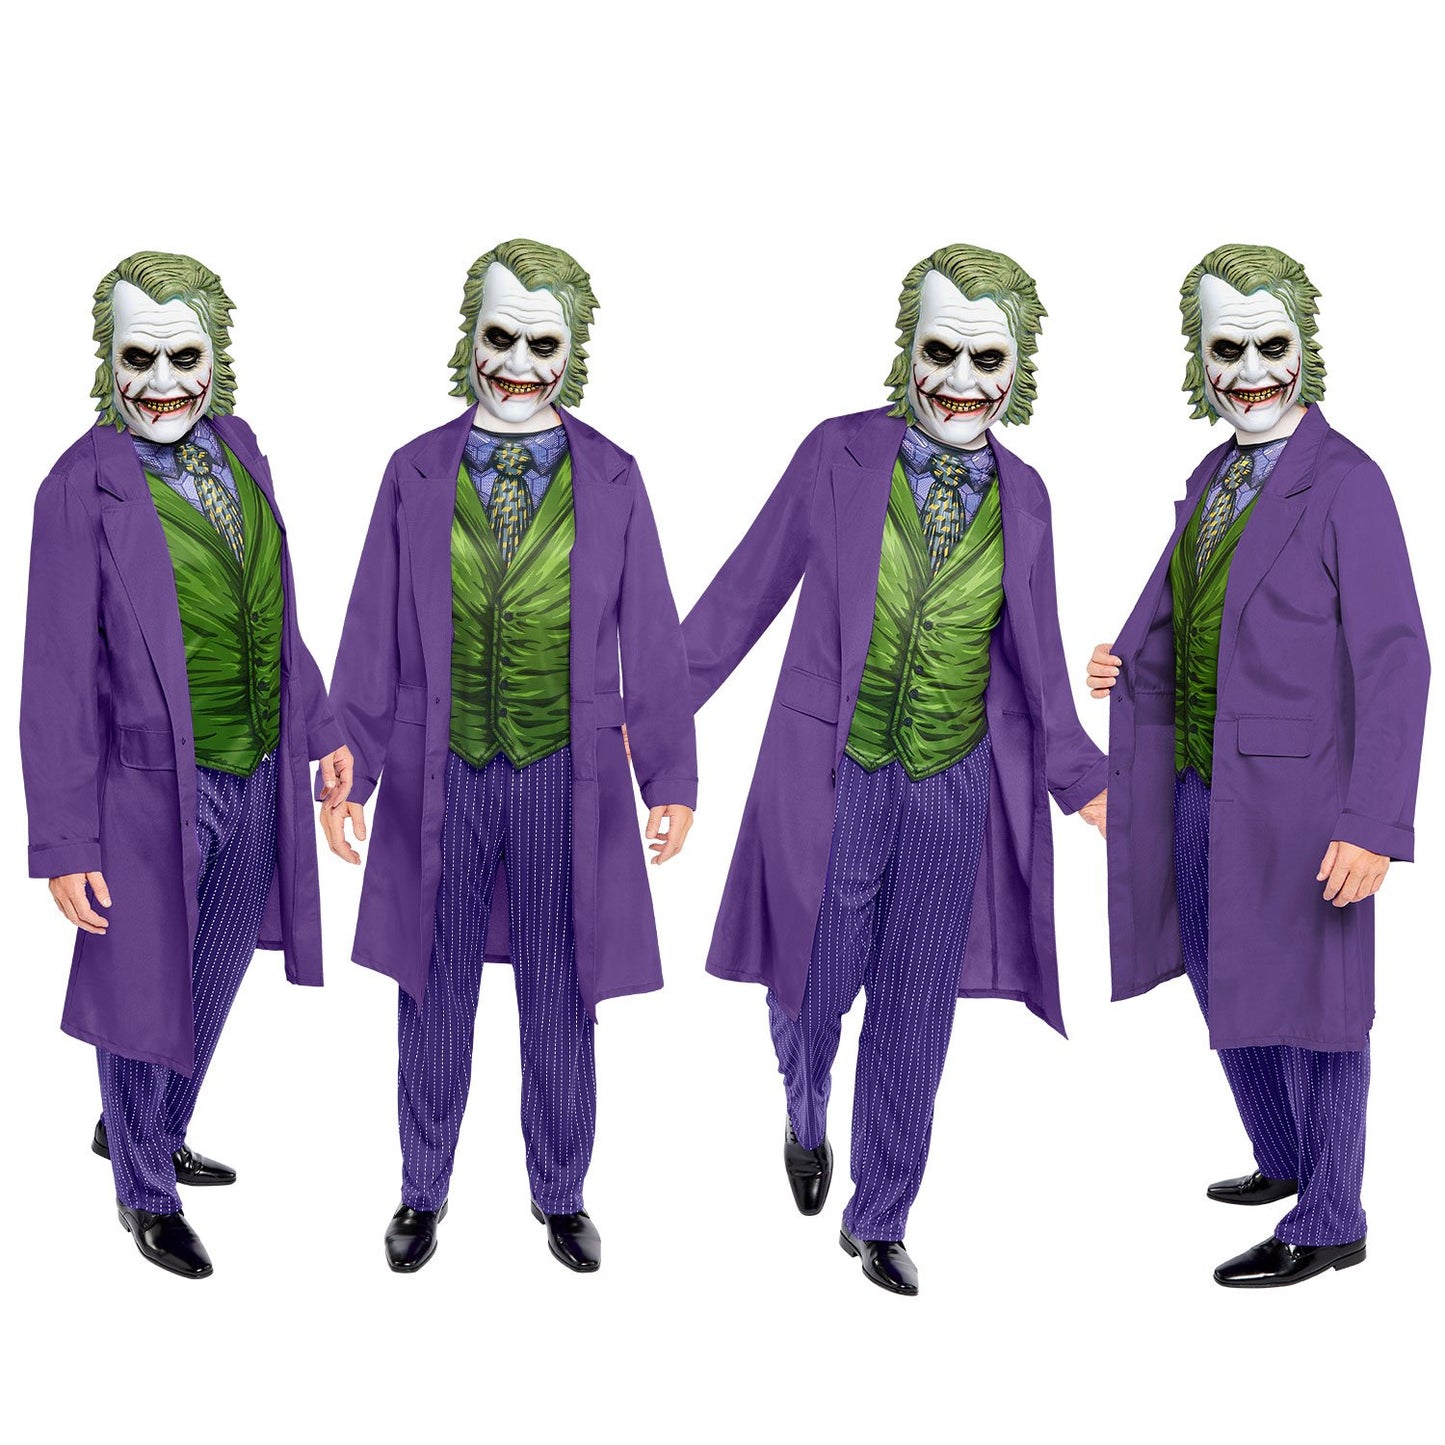 Joker Movie Costume